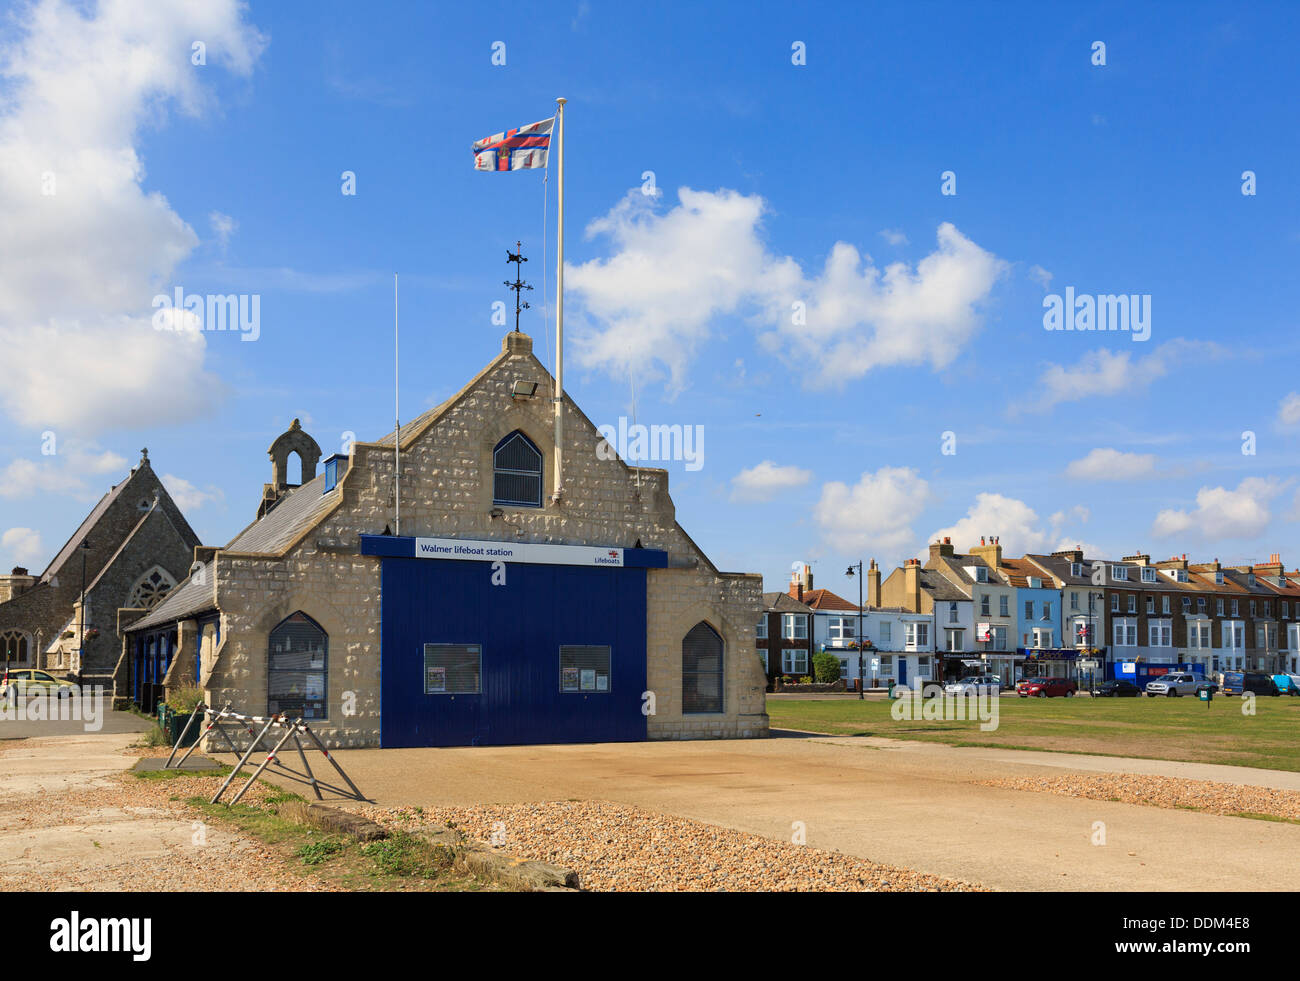 Walmer RNLI Lifeboat Station mit Flagge an der Strandpromenade von Deal, Kent, England, UK, Großbritannien, Stockfoto